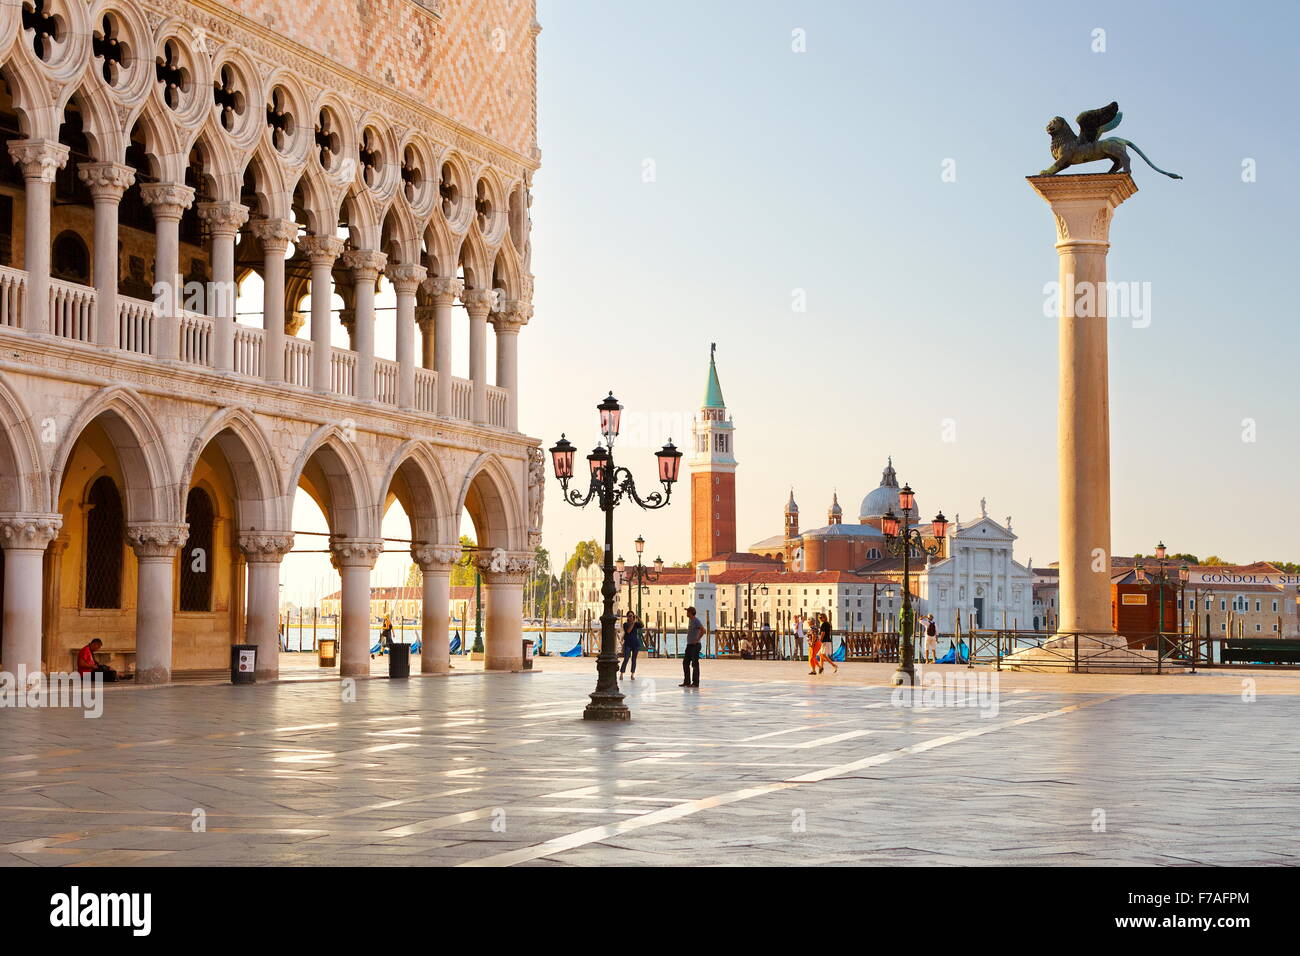 St. Mark's Square and church San Giorgio Maggiore, Venice, UNESCO World Heritage Site, Veneto, Italy Stock Photo